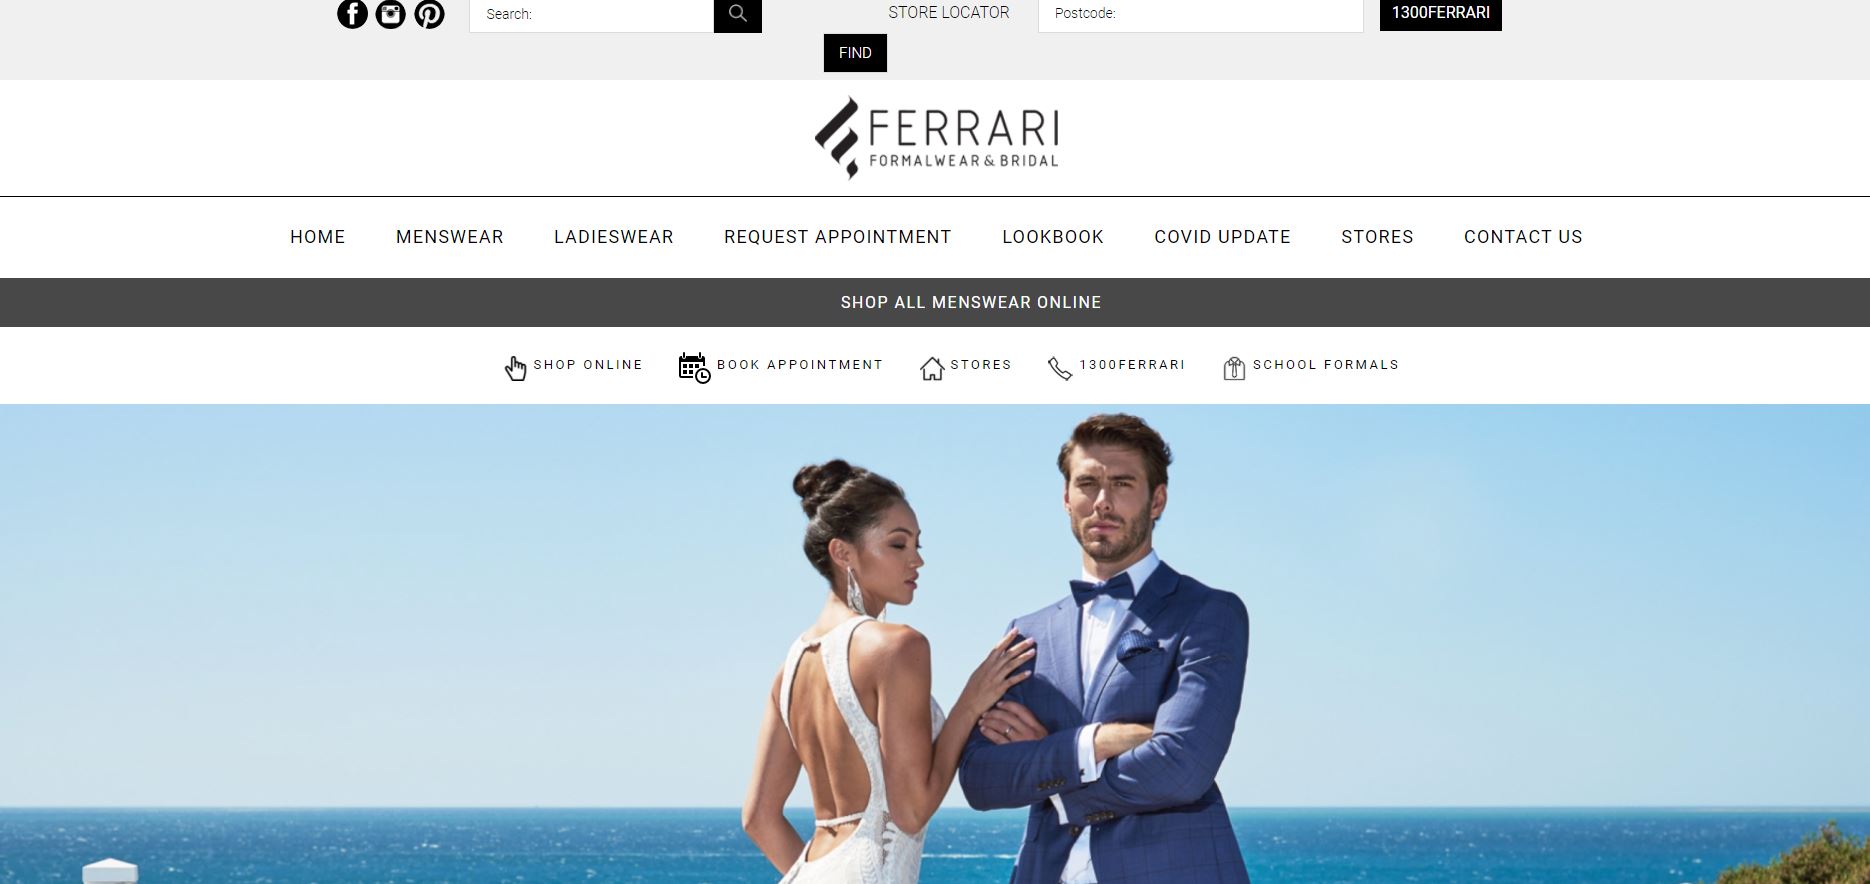 Ferrari Formalwear & Bridal Affordable Wedding Dress Shops Melbourne